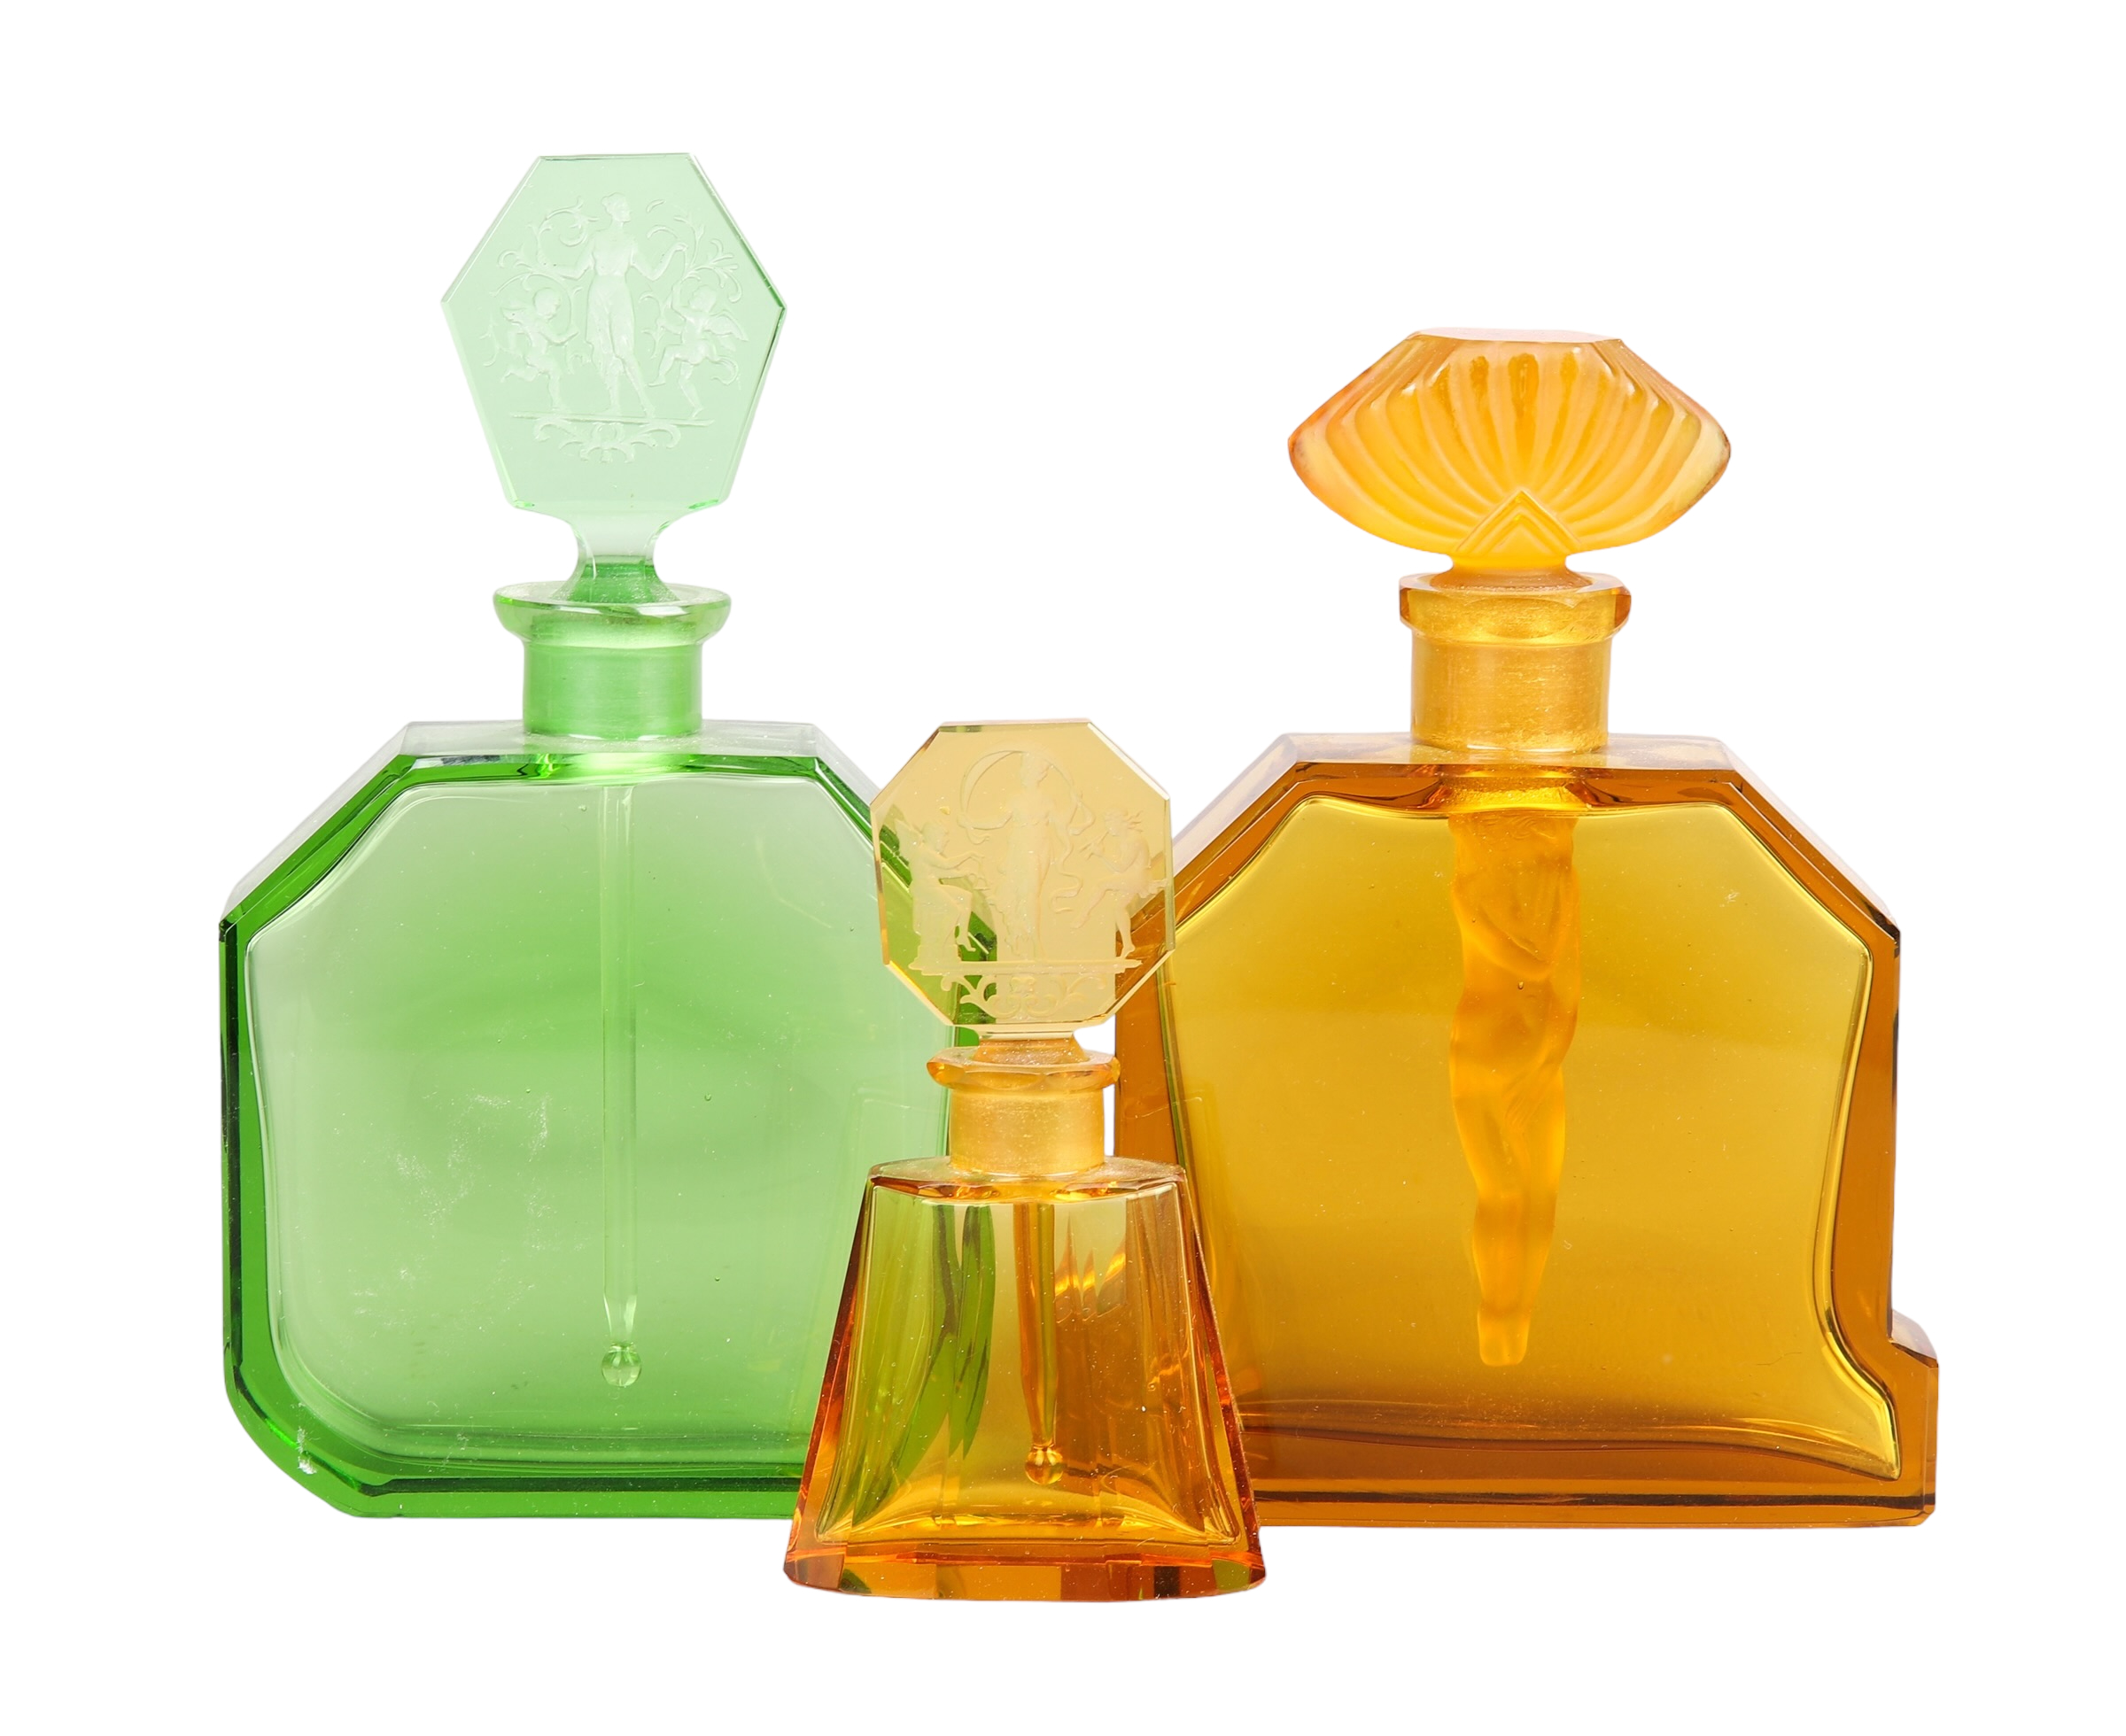  3 Czech Nouveau scent bottles 2e15c0